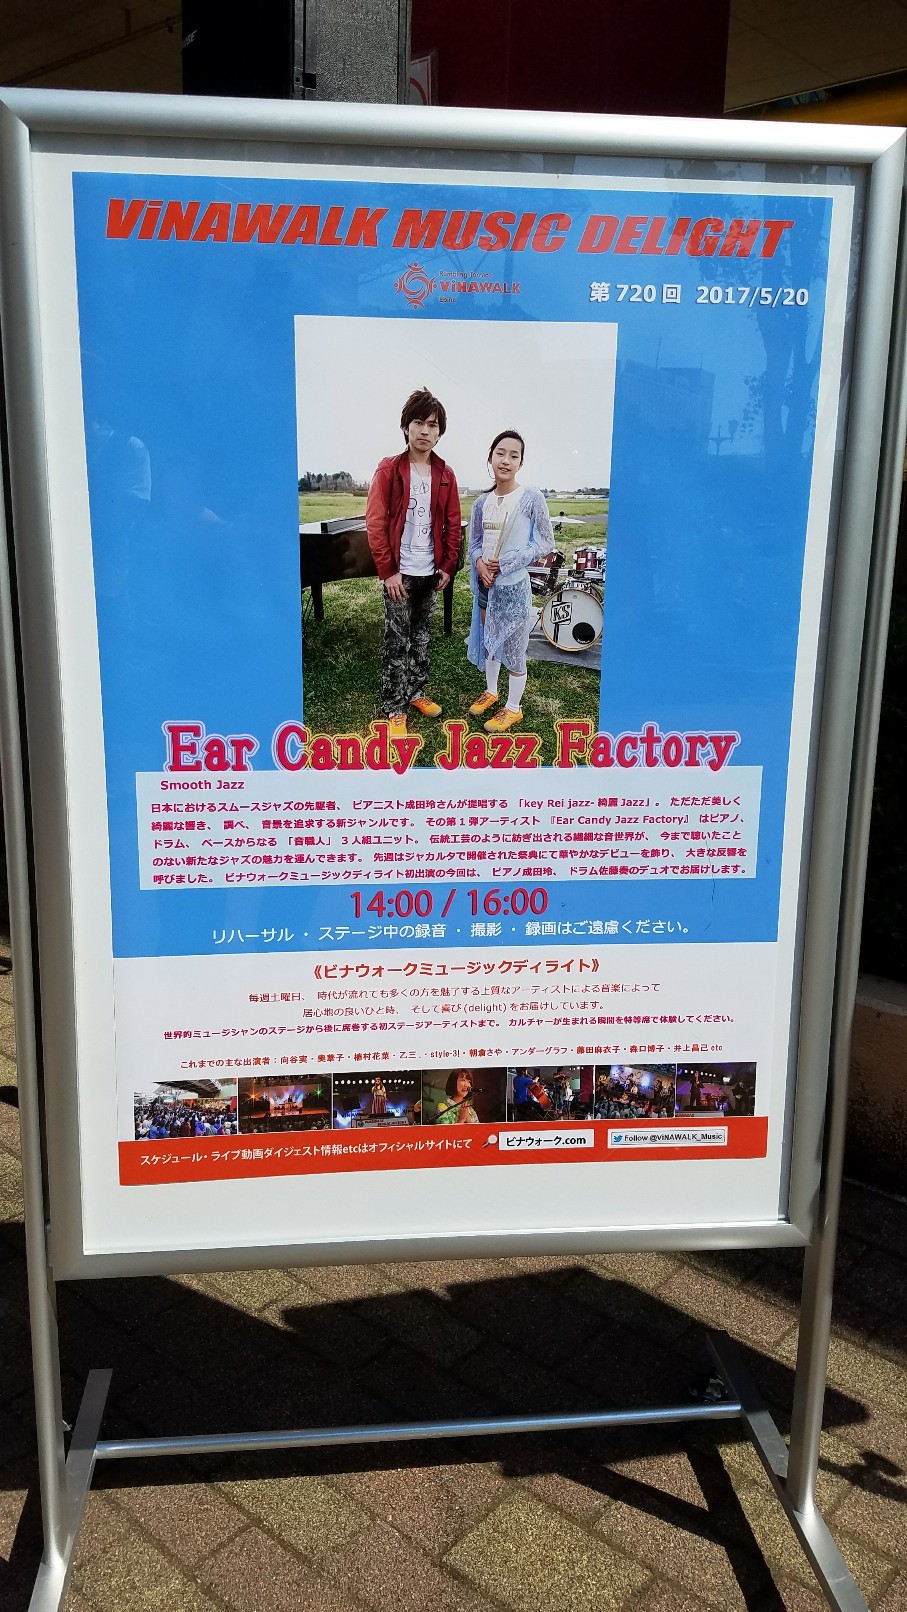 画像 【Liveレポート】Ear Candy Jazz Factory (Duo) @ ビナウォーク の記事より 1つ目